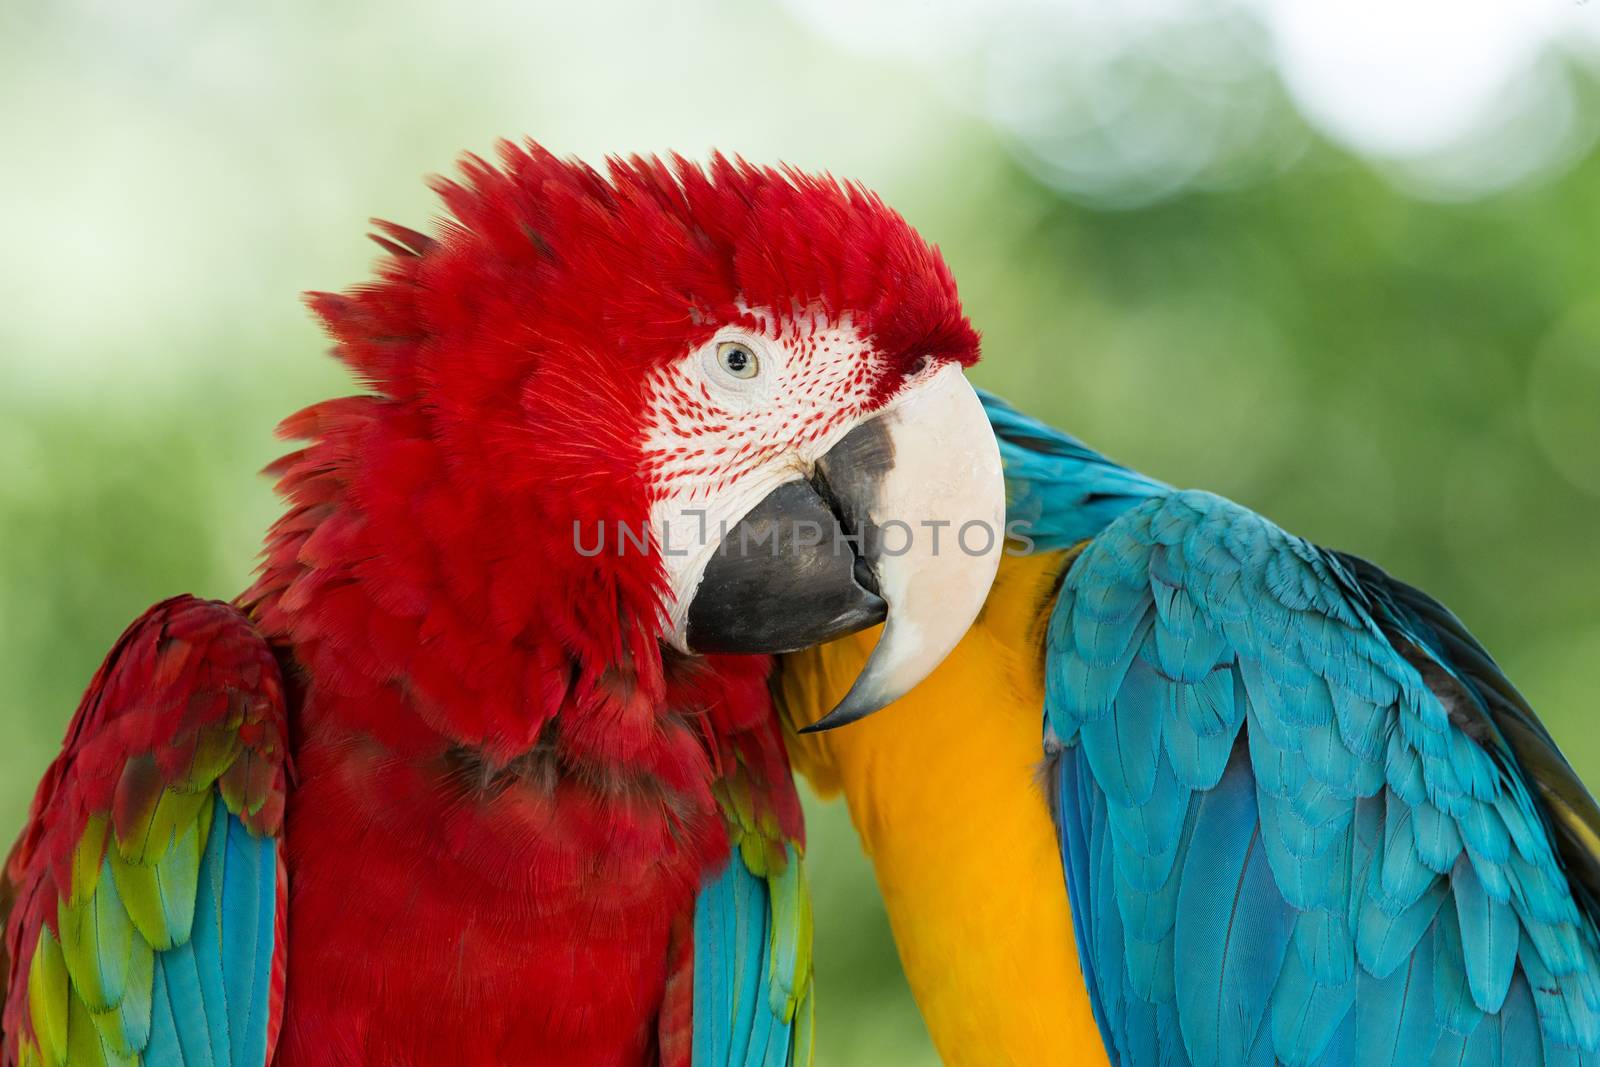  Macaws parrots by Pakhnyushchyy